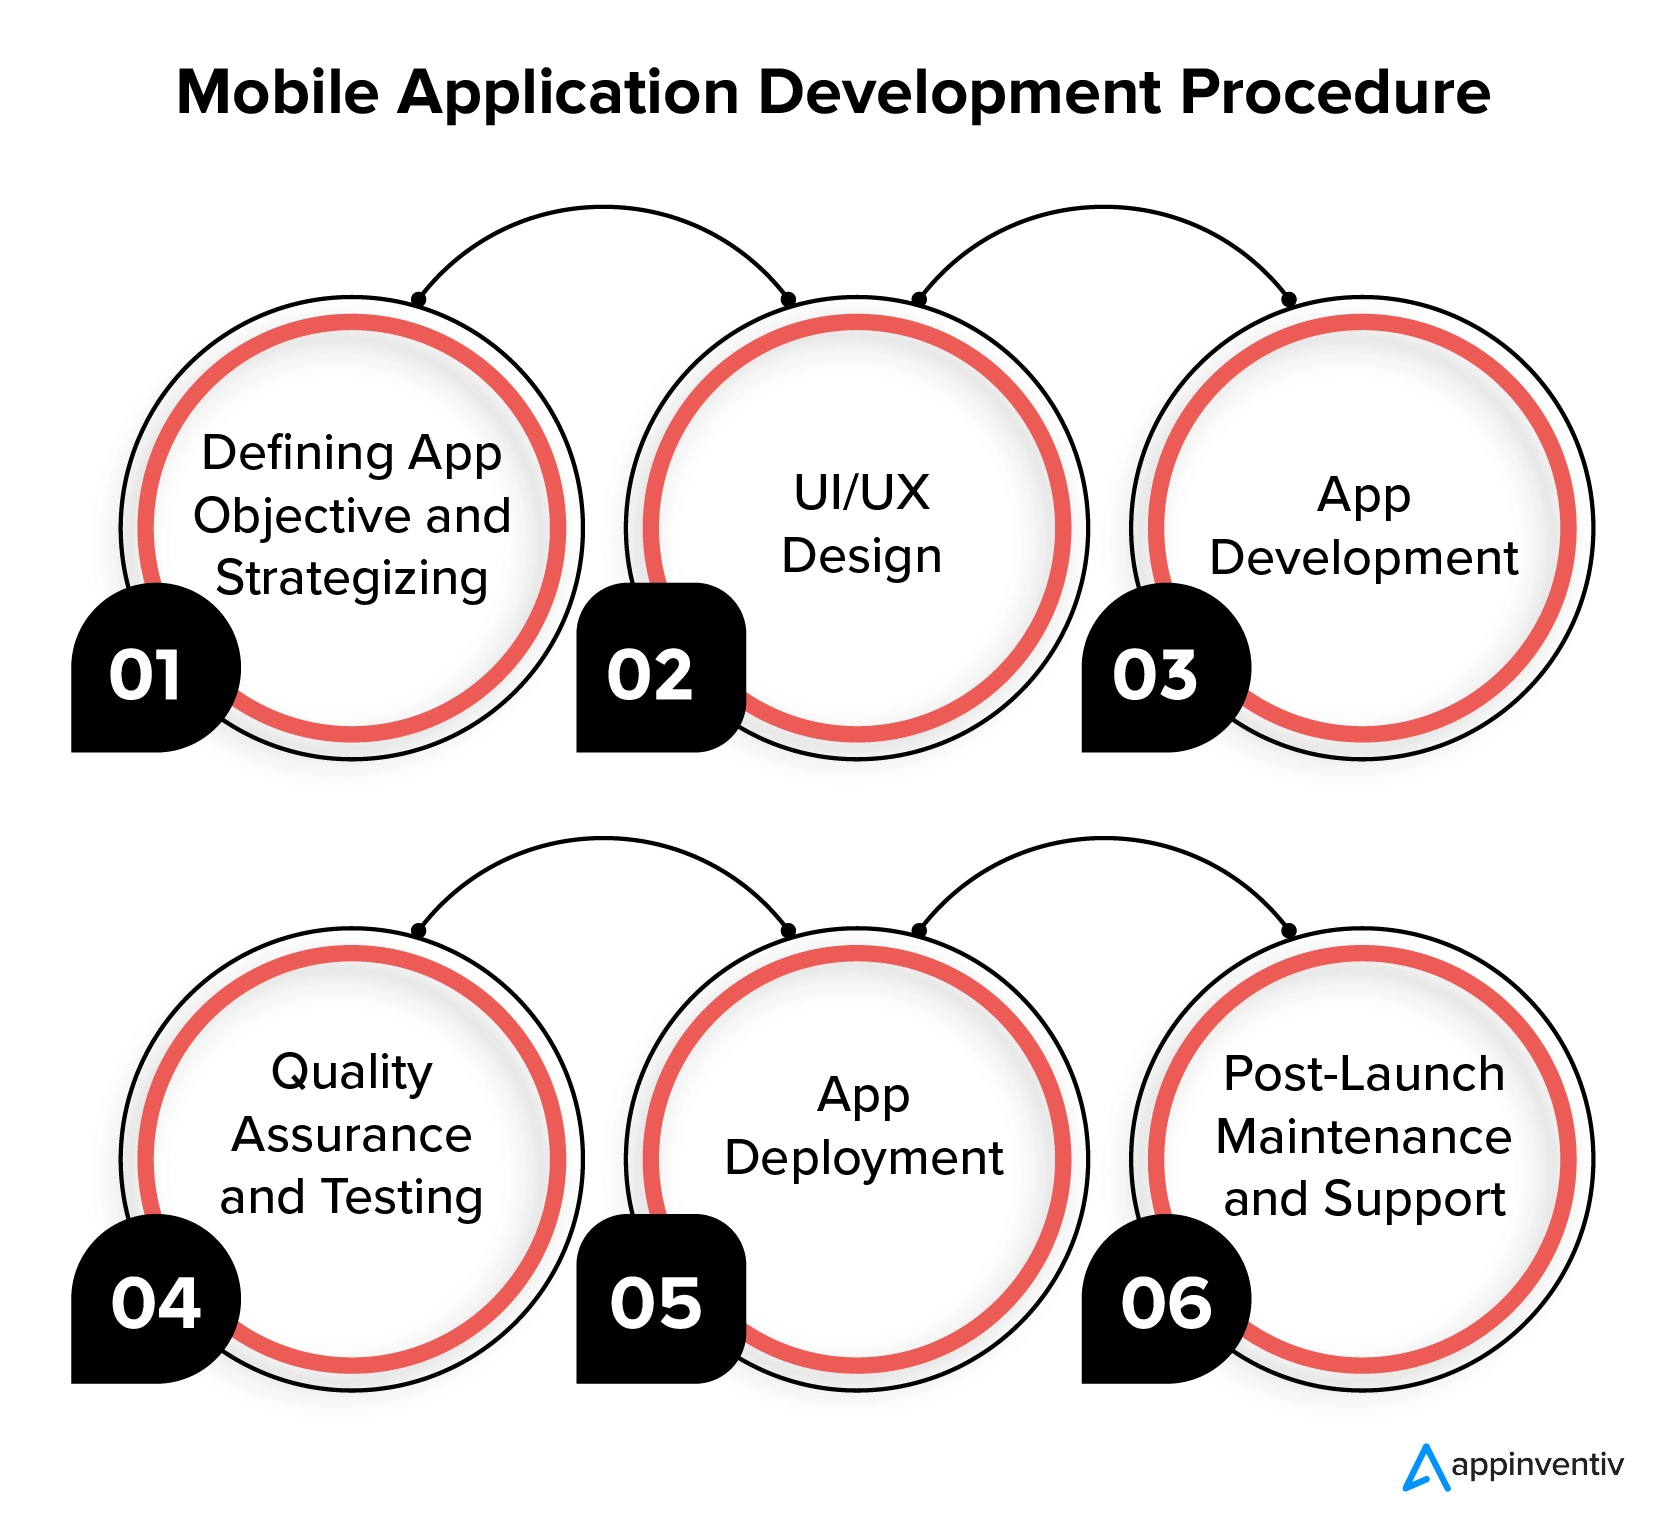 Las etapas del desarrollo de aplicaciones móviles